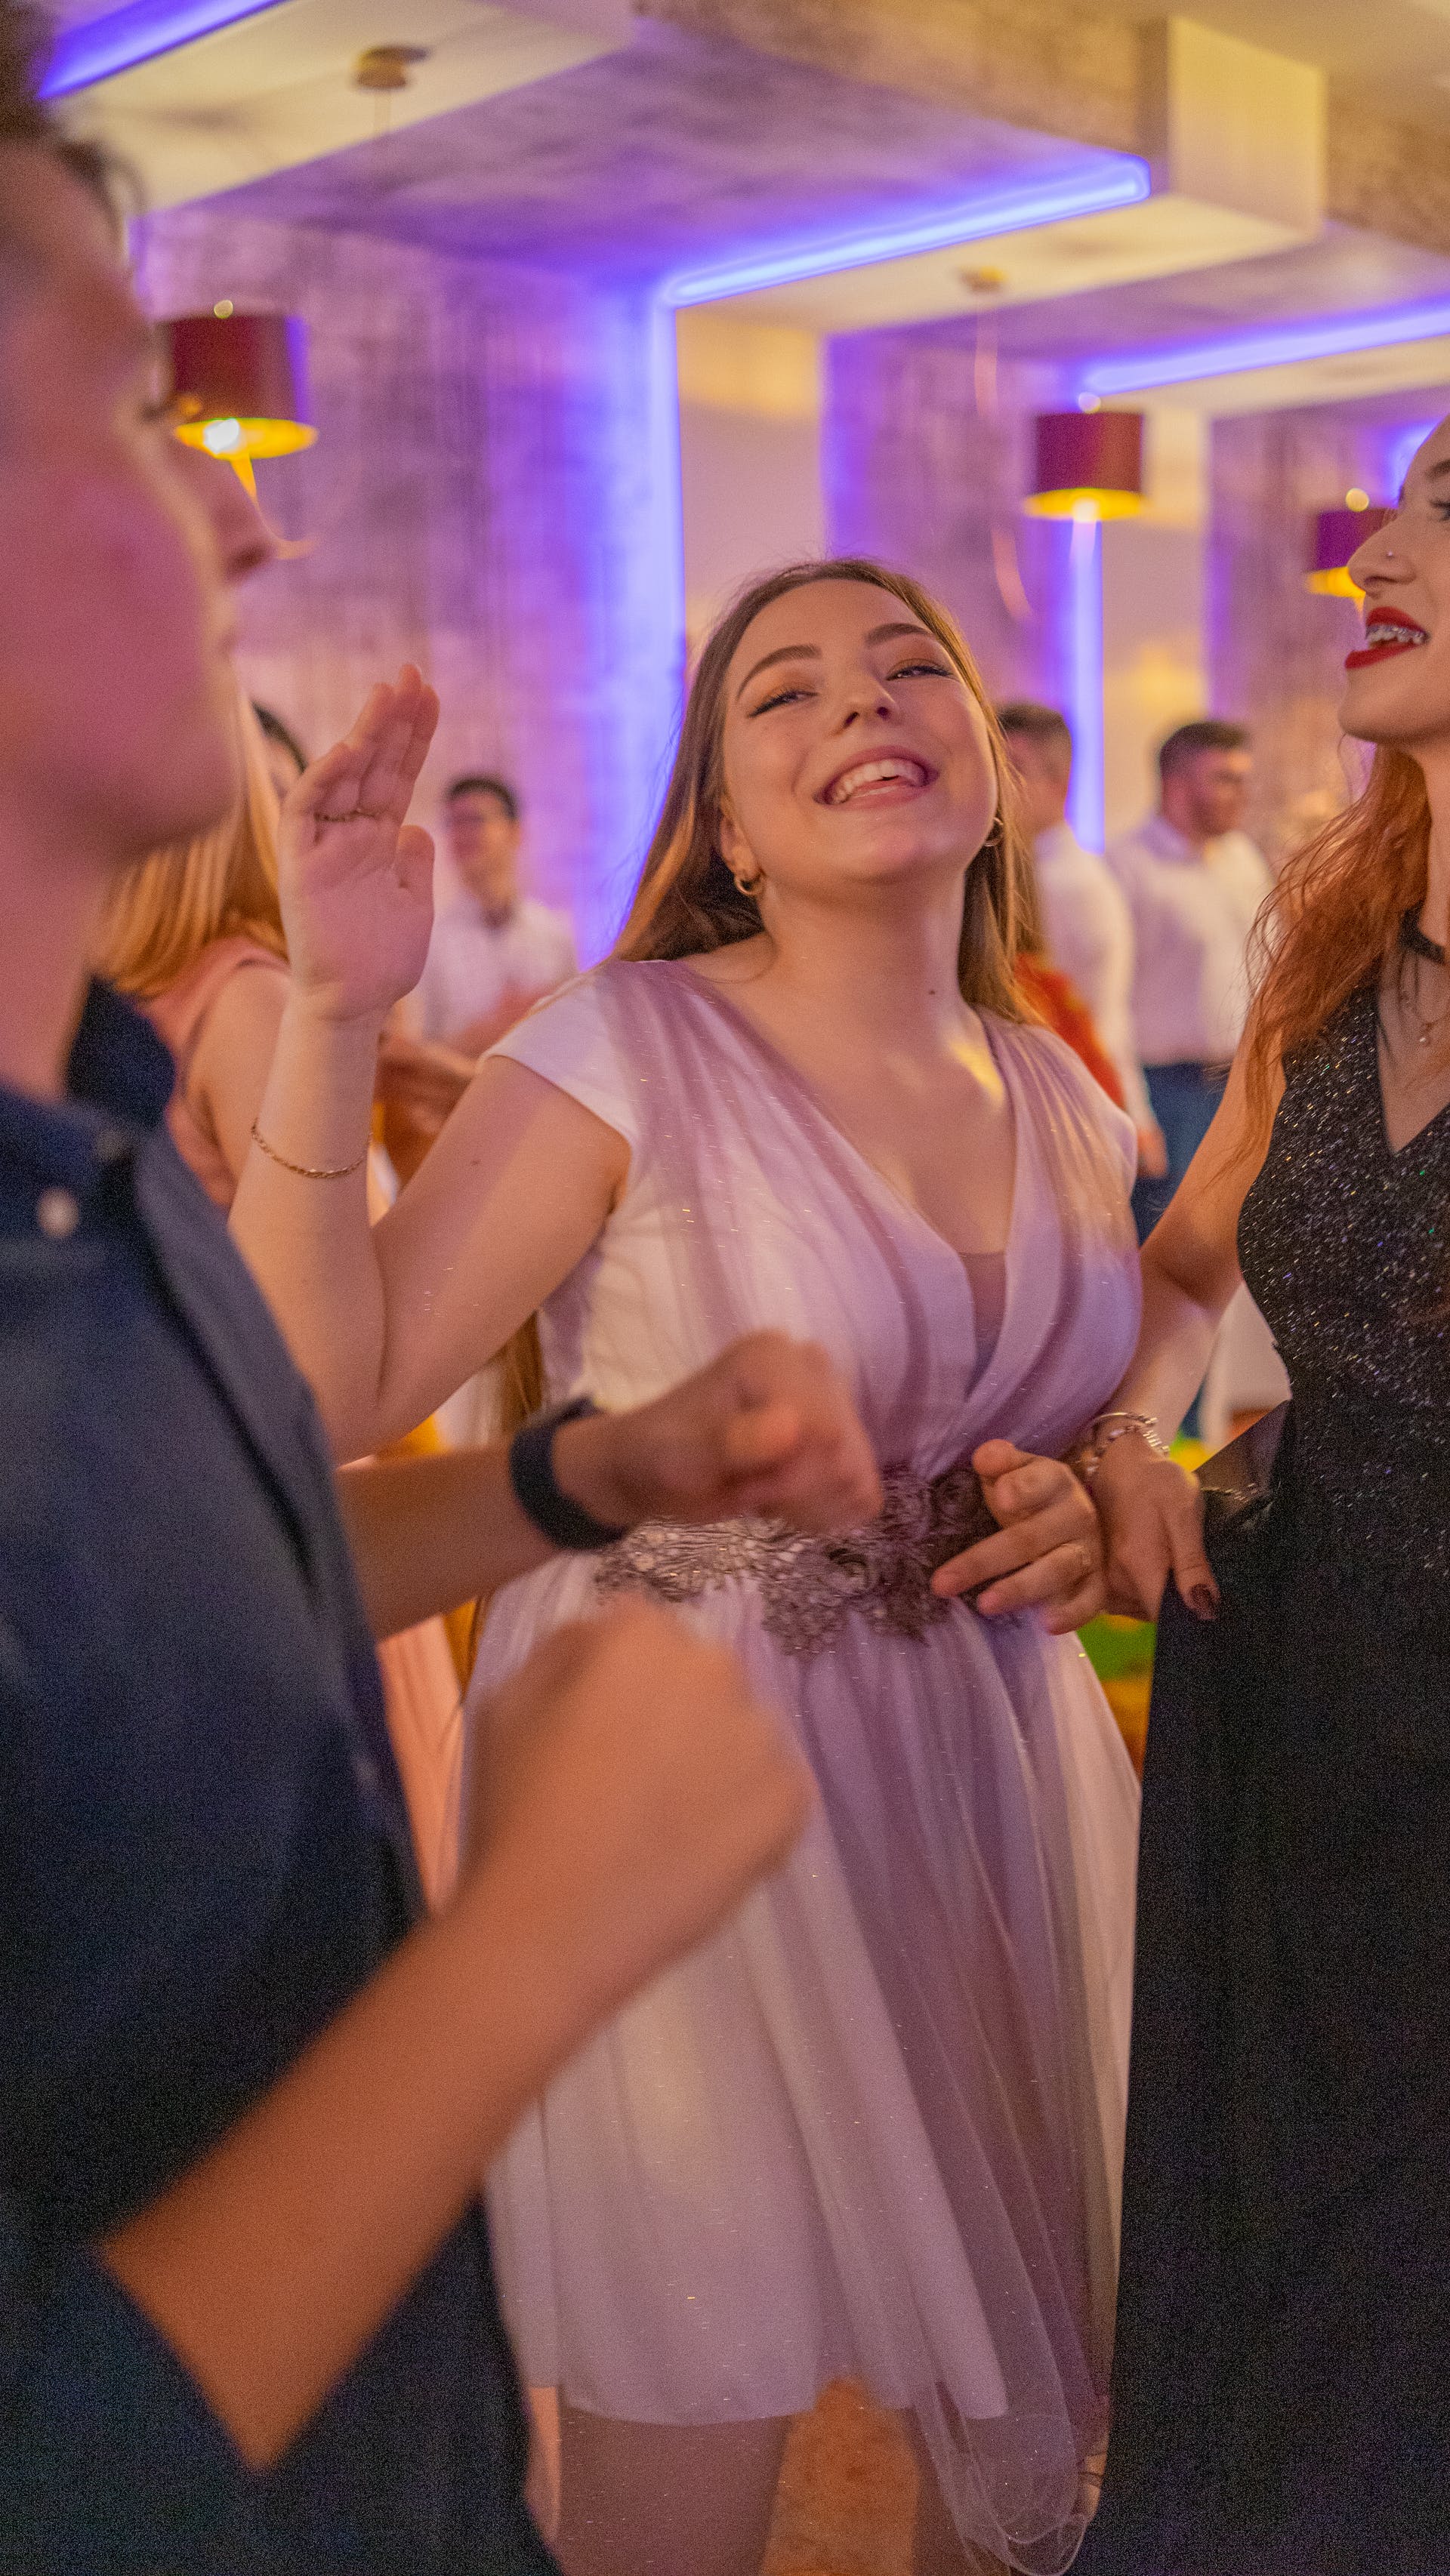 Eine Frau tanzt auf einer Hochzeitsfeier | Quelle: Pexels